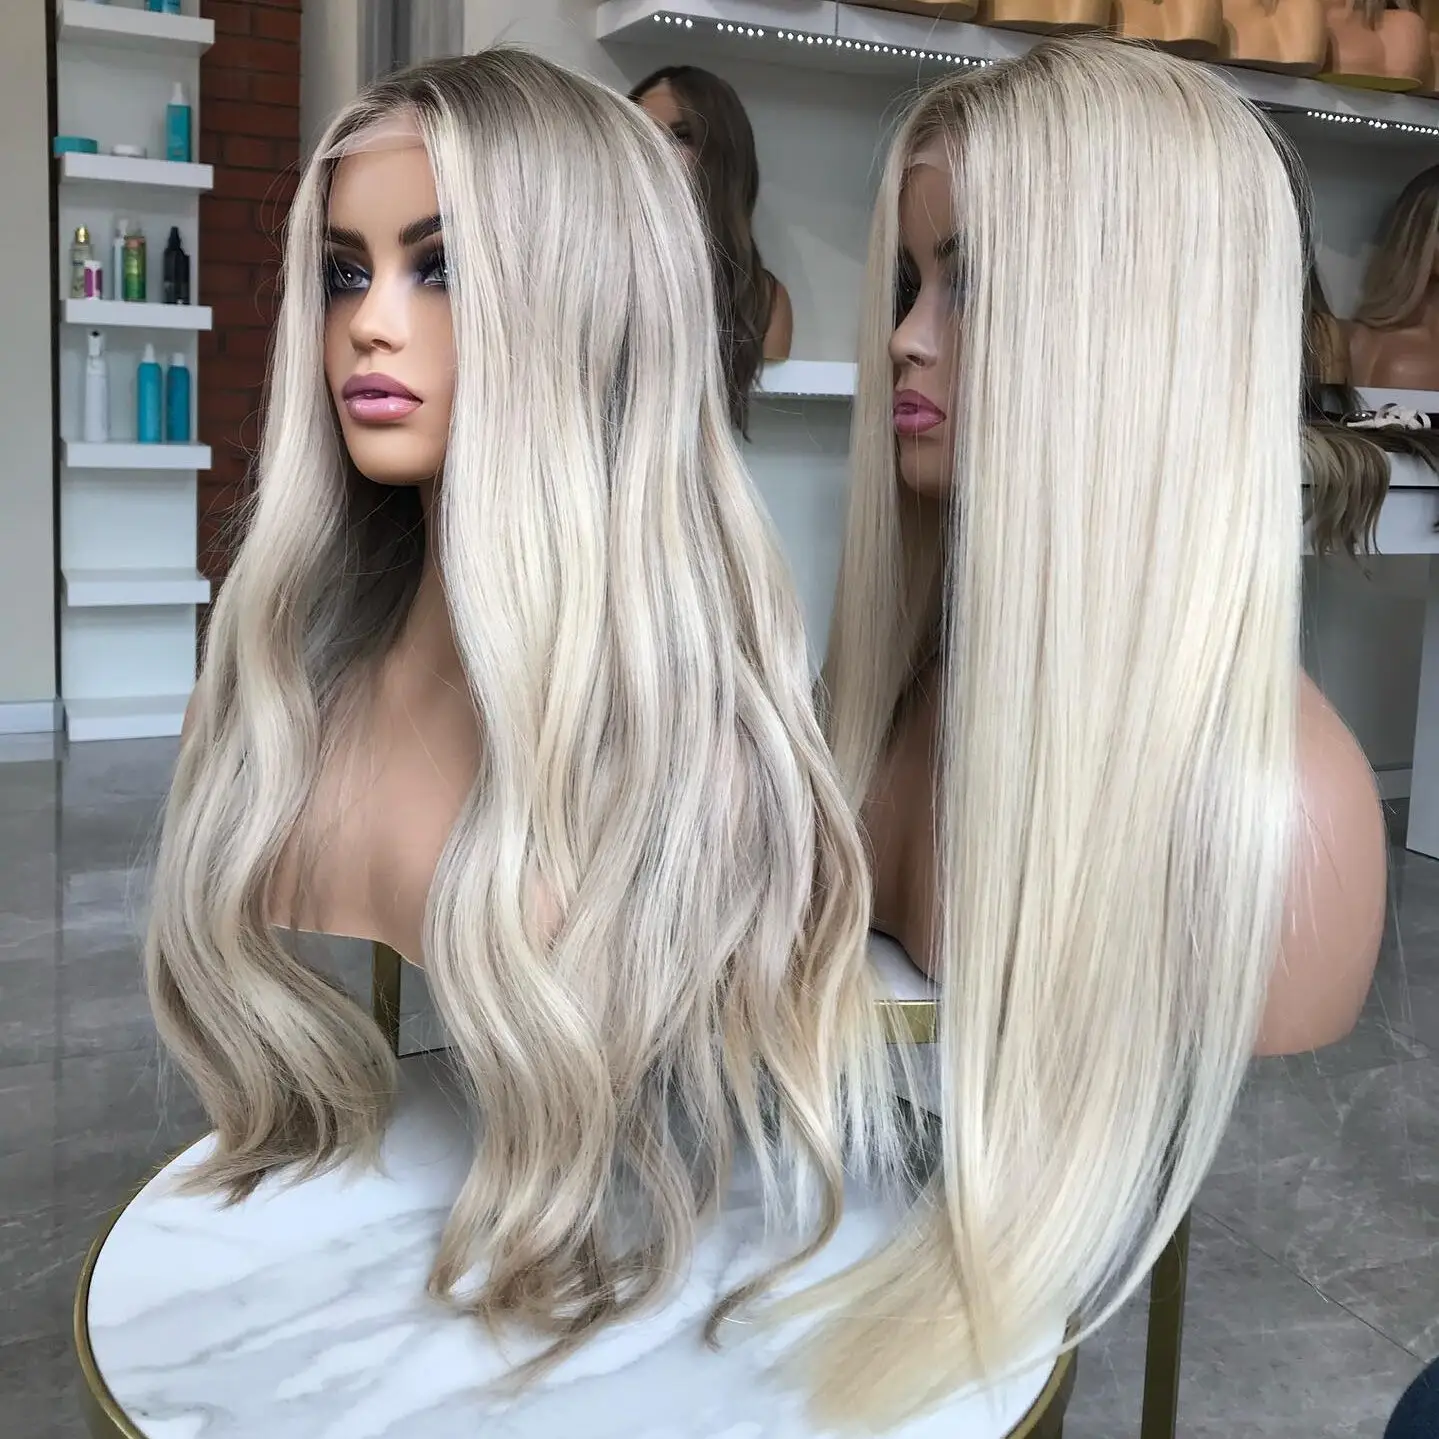 Perruques péruviennes Lace Front perruque de cheveux humains Full Lace Blonde naturelle pour les femmes blanches de haut niveau perruques frontales en dentelle alignées sur les cuticules